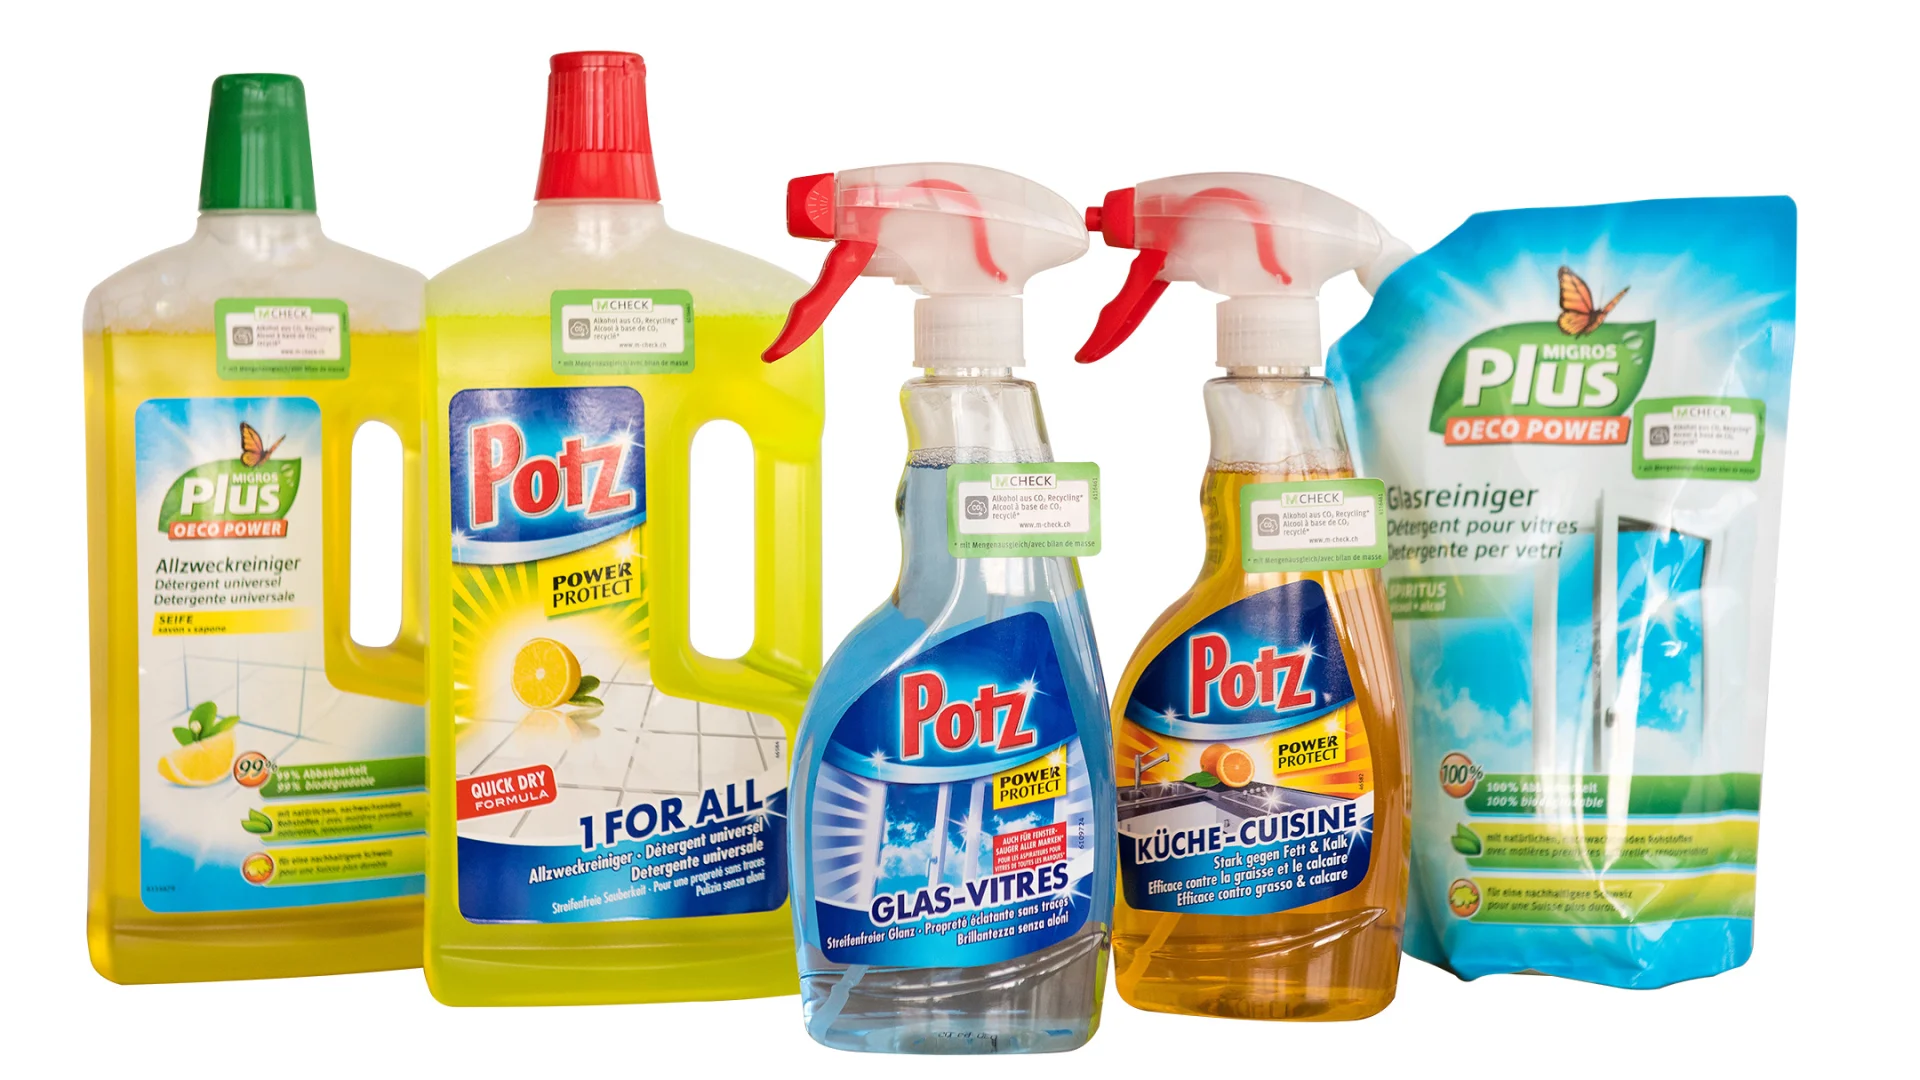 Diversi detergenti (Potz e Migros Plus) contenenti alcol da CO2 riciclato.